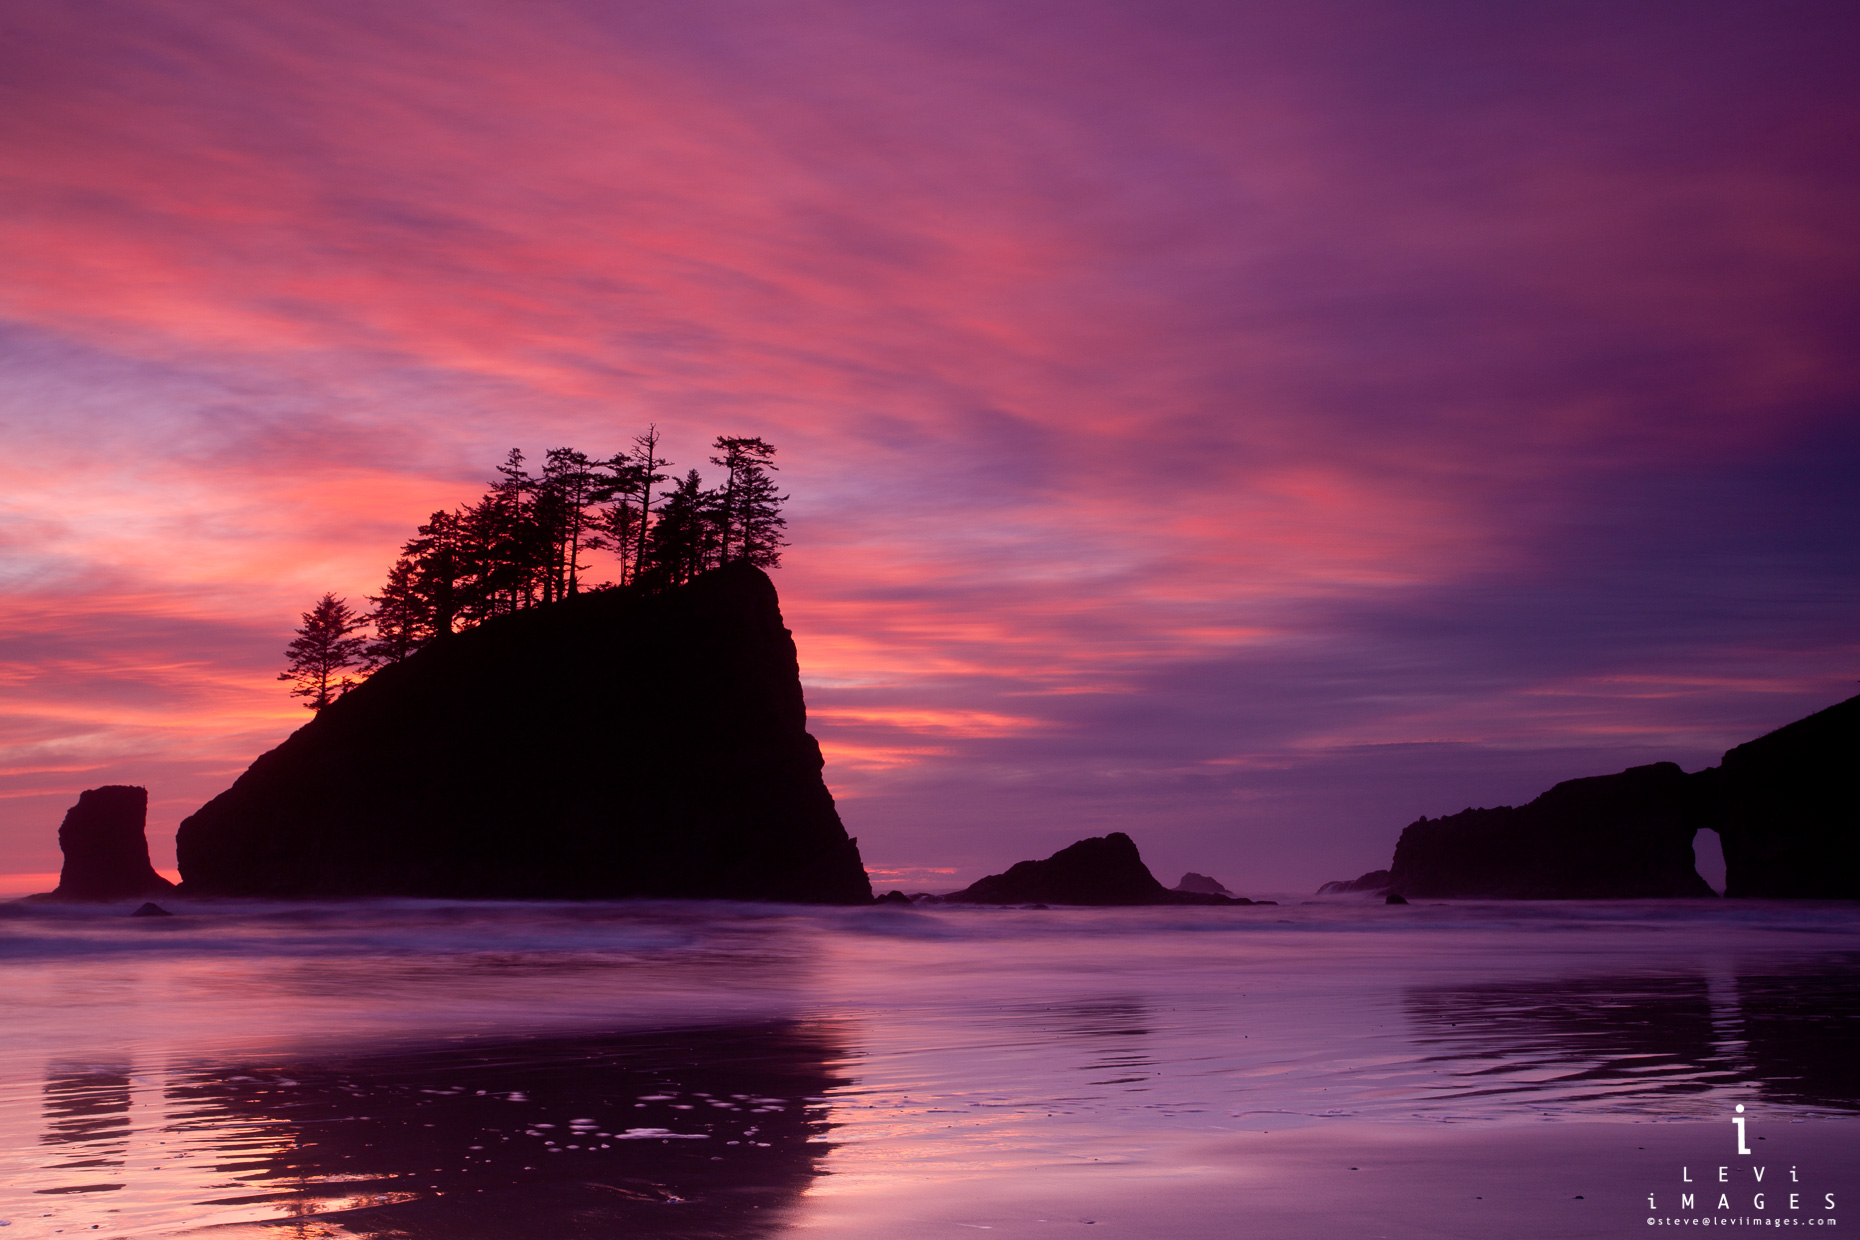 Sunset at second beach, Olympic Peninsula, Washington, USA